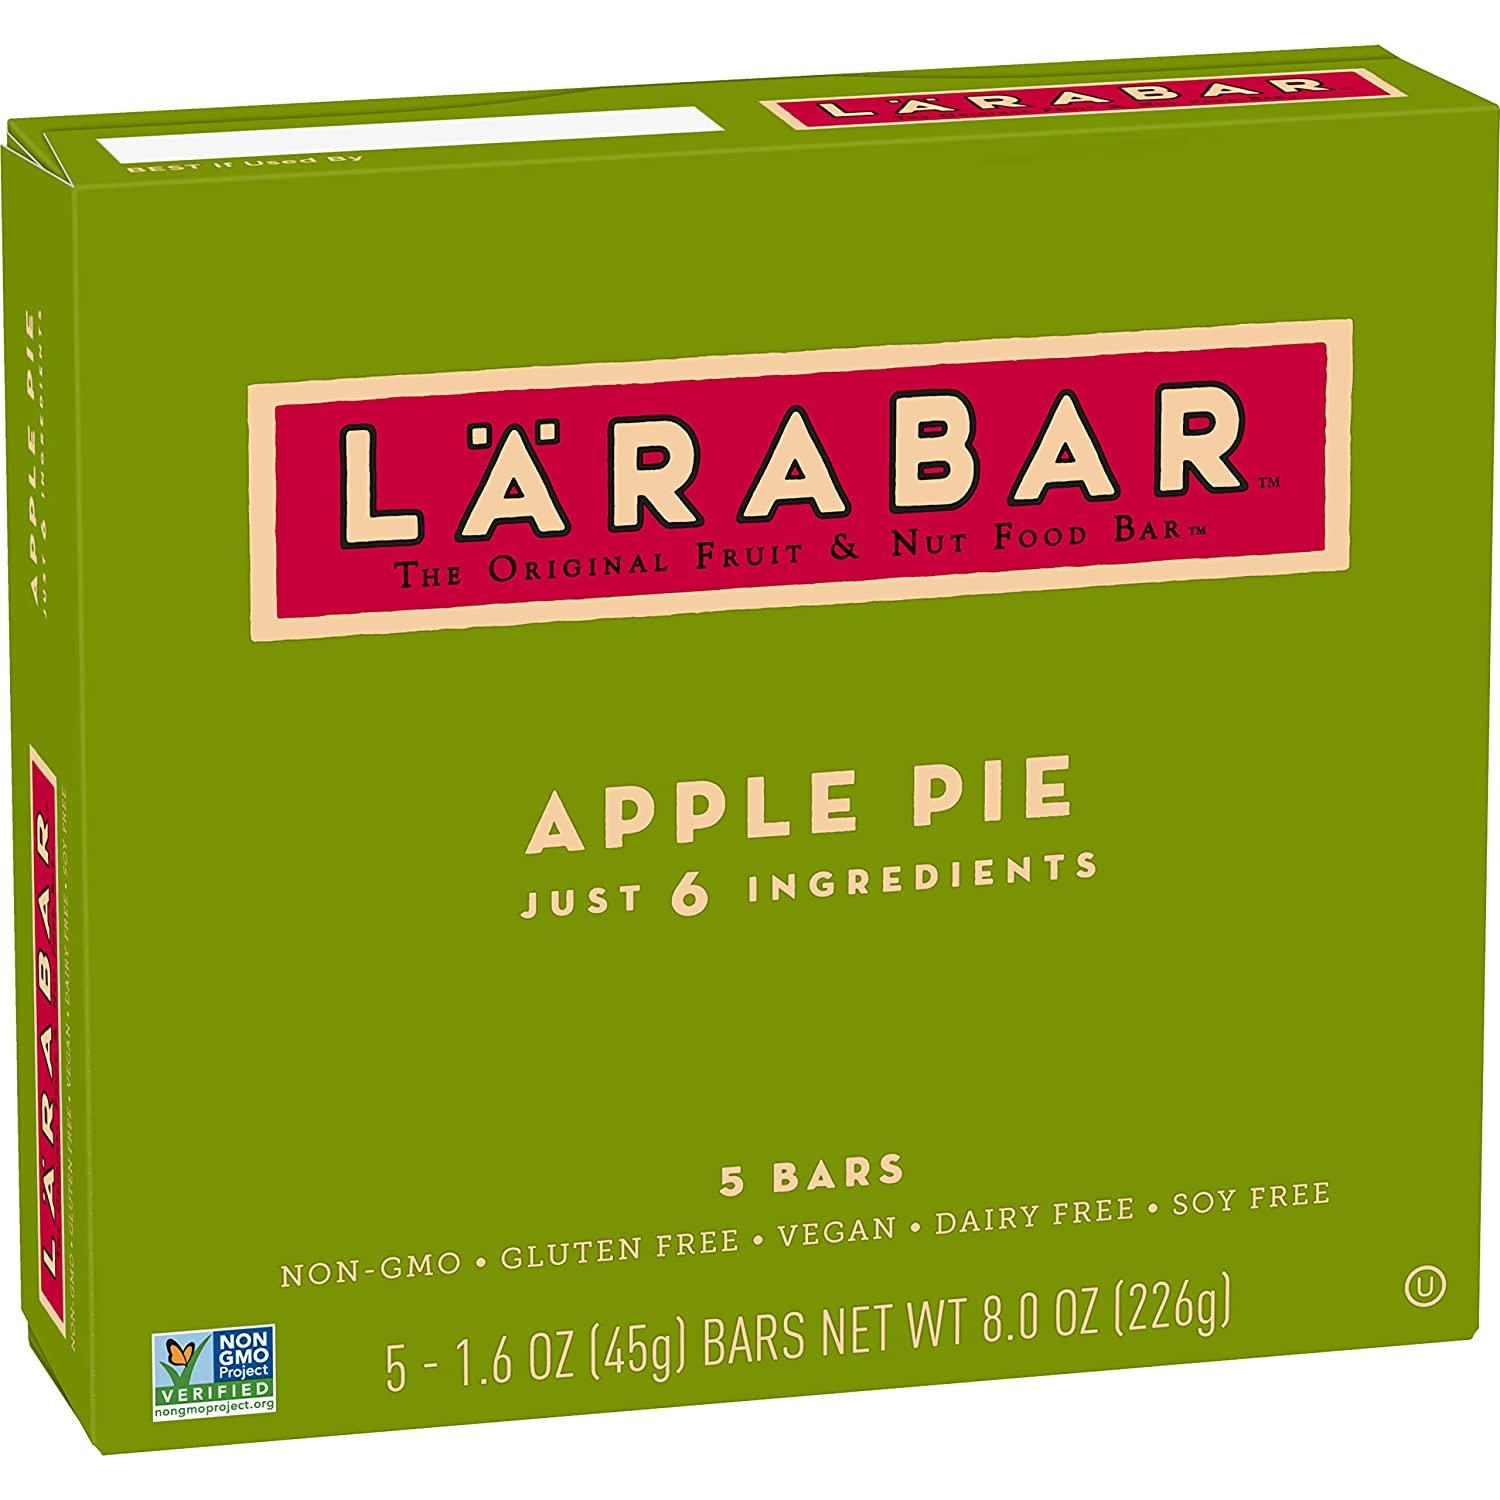 5 Larabar Apple Pie Bar for $3.29 Shipped